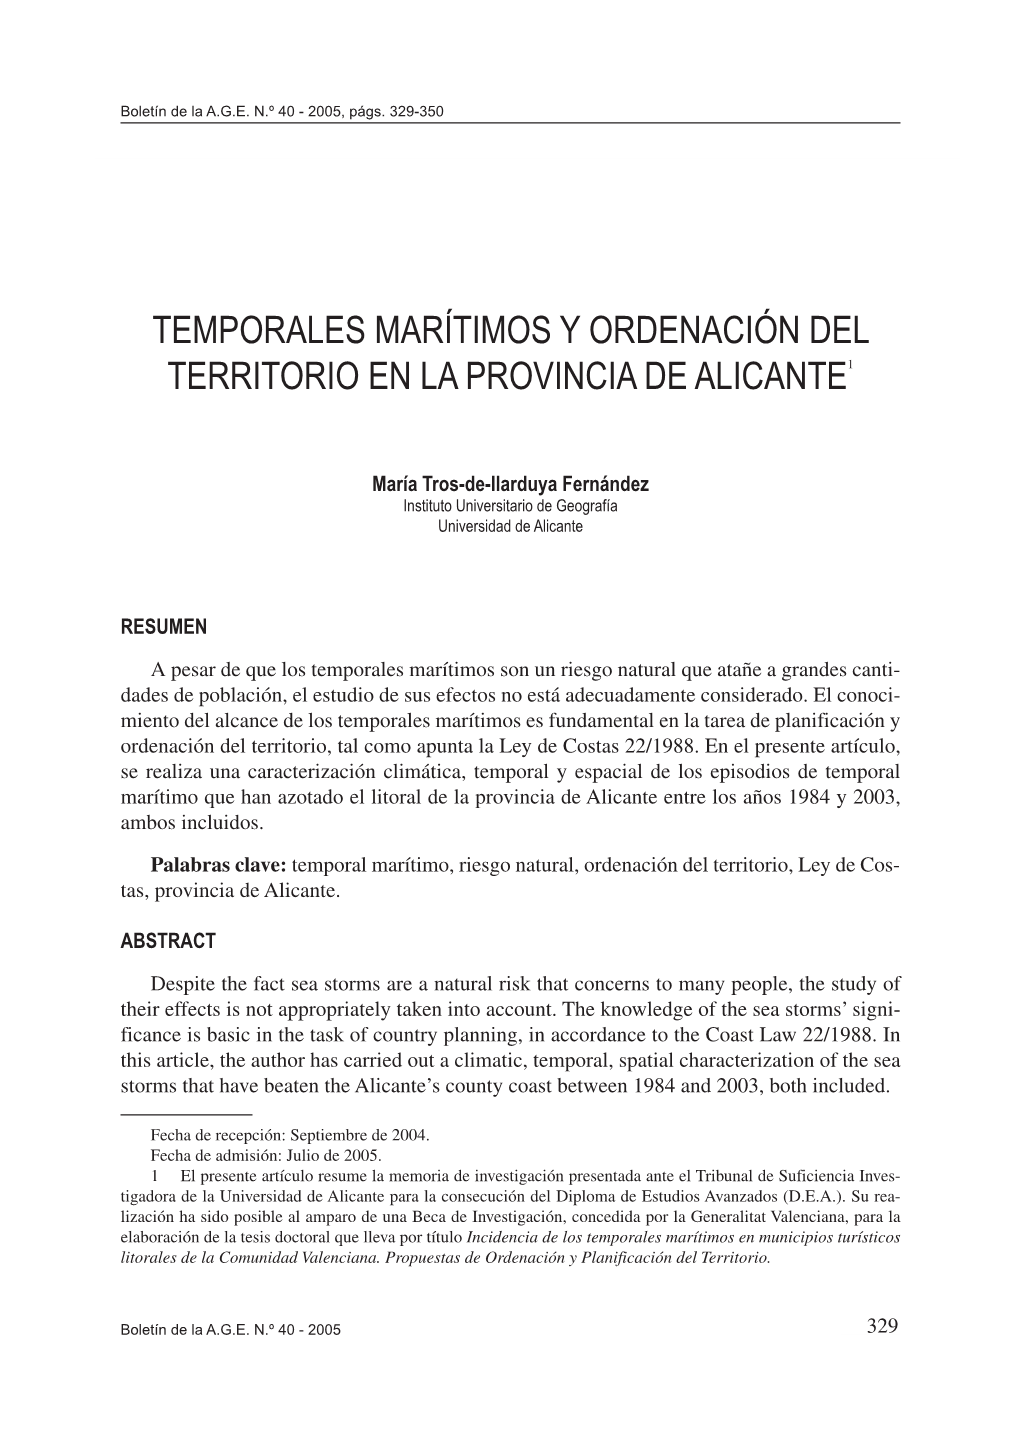 Temporales Marítimos Y Ordenación Del Territorio En La Provincia De Alicante1